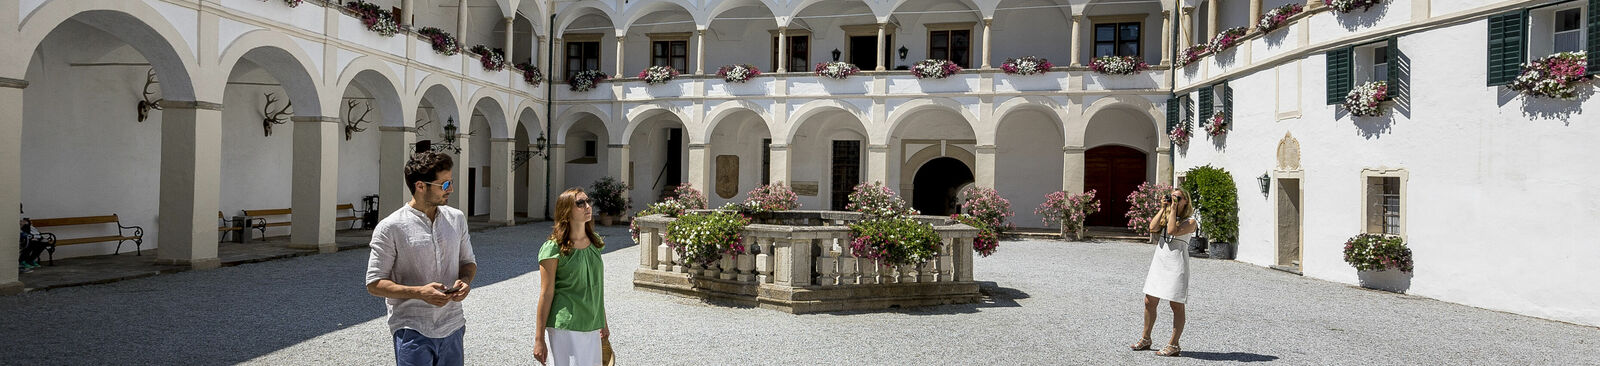 Florentinerhof auf Schloss Herberstein in der Oststeiermark